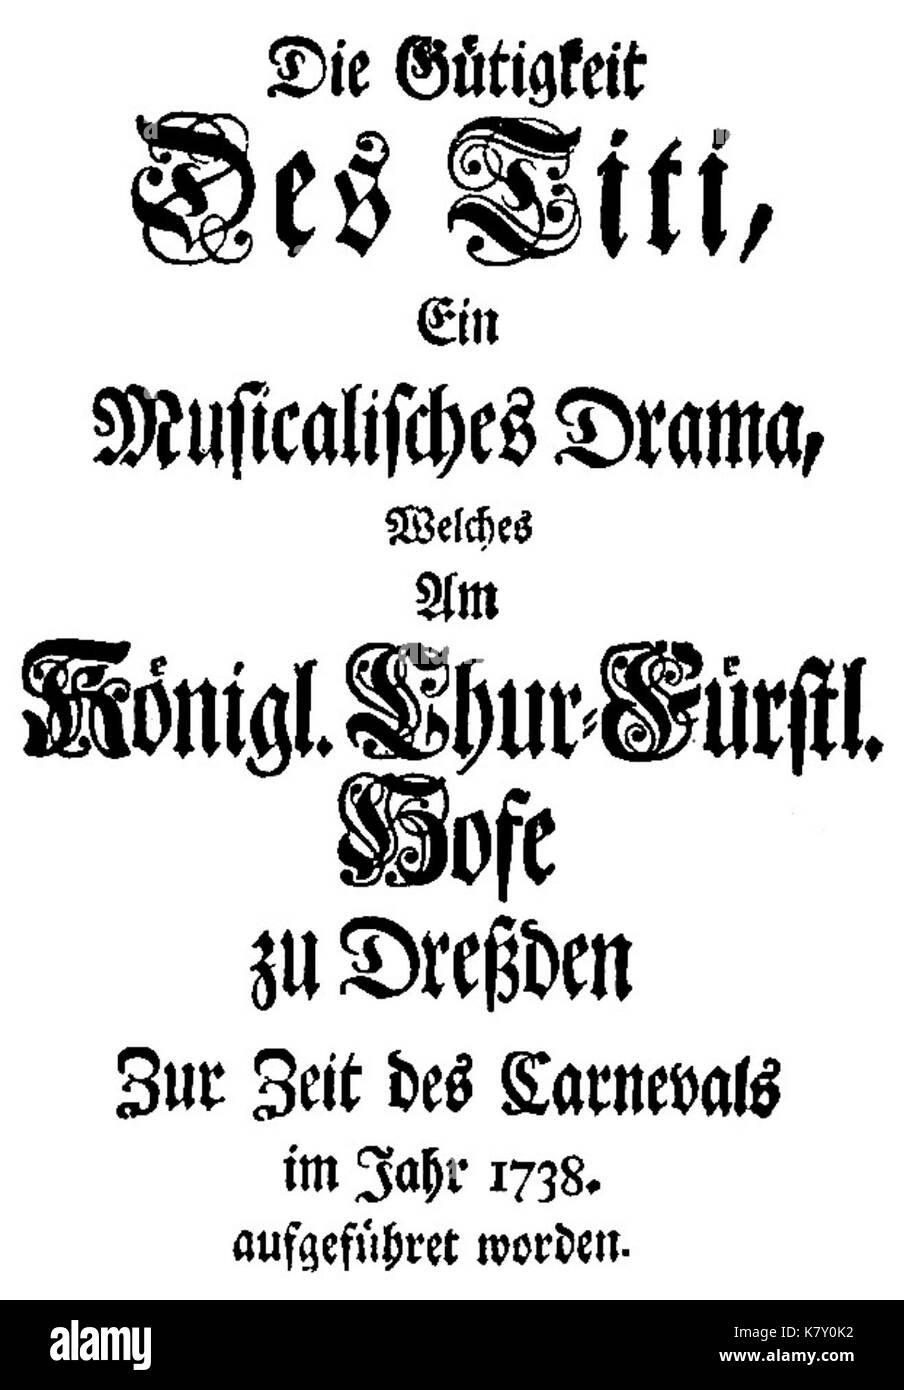 Johann Adolph Hasse   La Clemenza di Tito   german titlepage of the libretto   Dresden 1738 Stock Photo